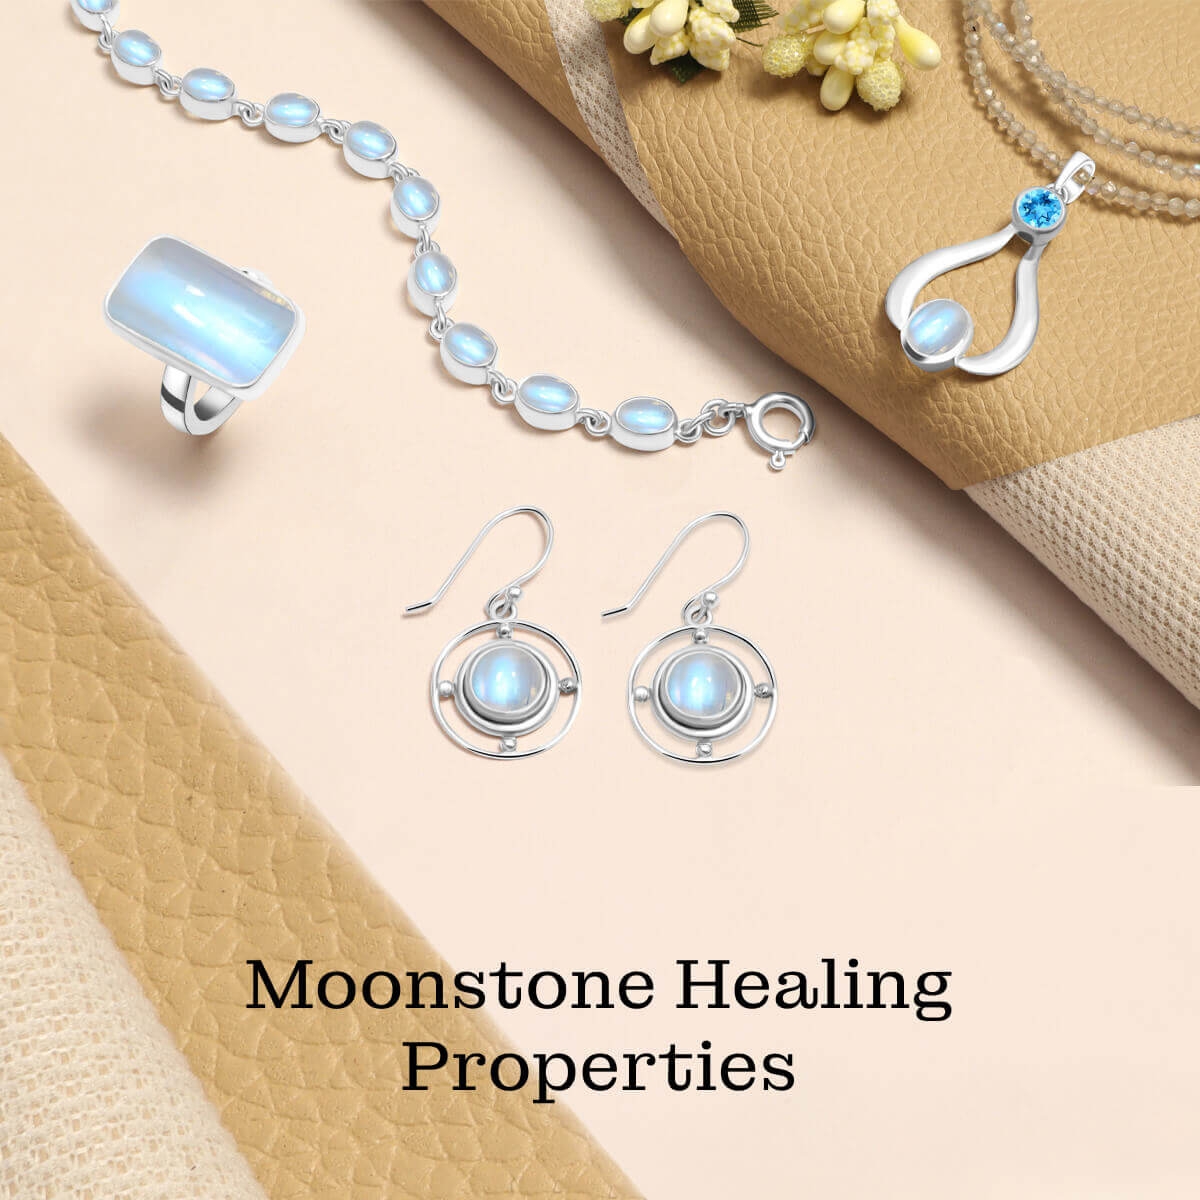 Moonstone Healing properties